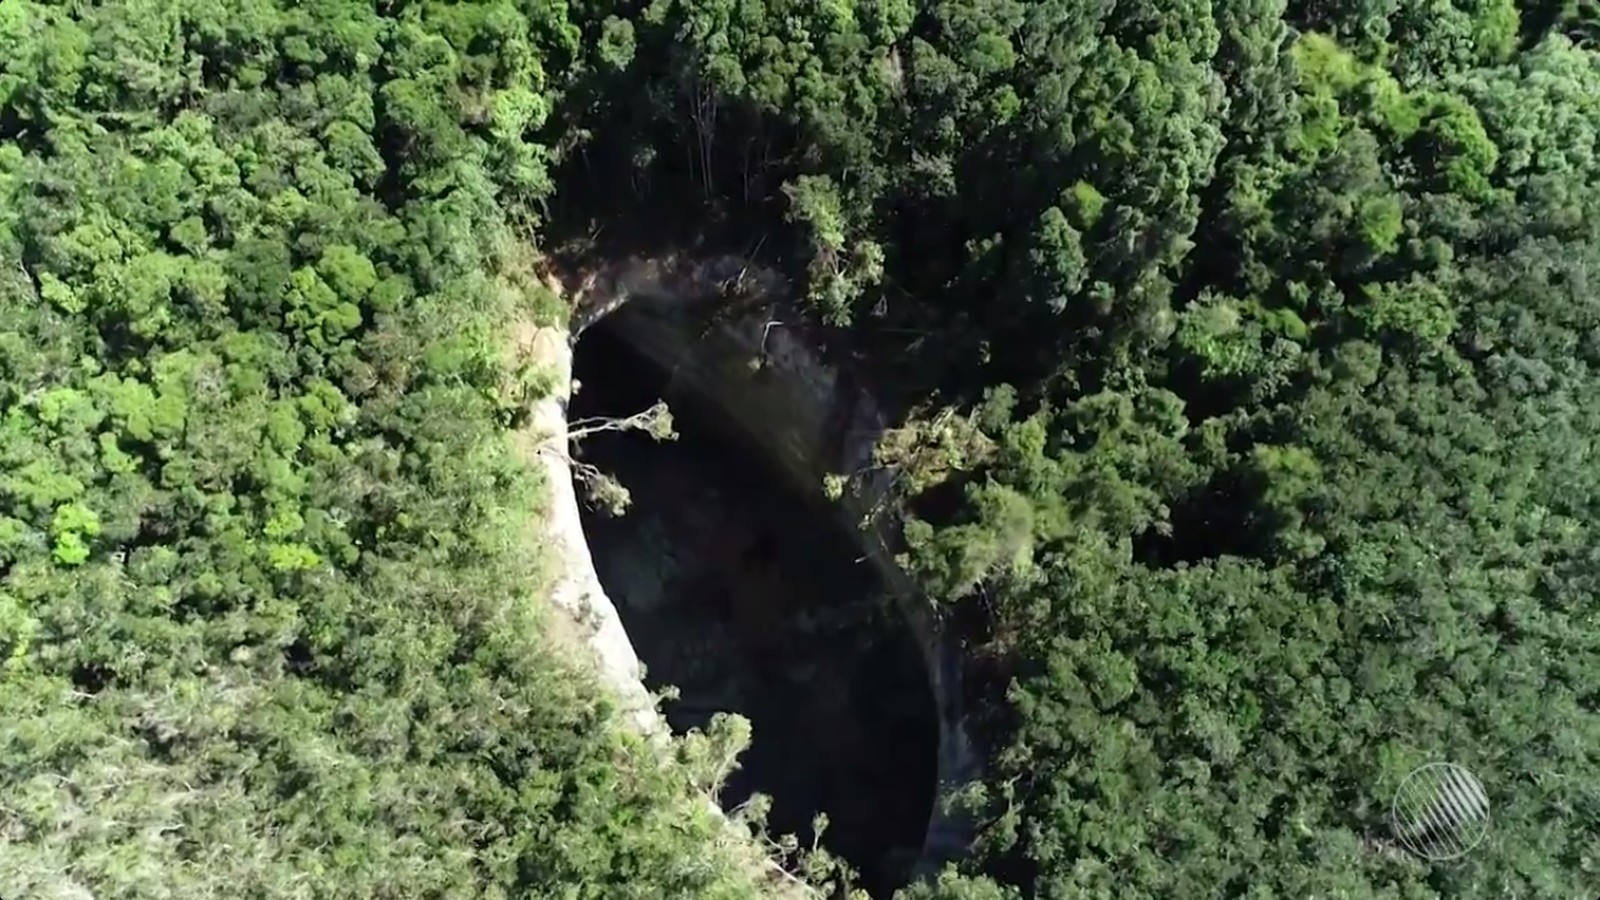 Cratera gigante misteriosa com quase 50 metros de profundidade surge perto de vila na BA e preocupa moradores: ‘Medo’